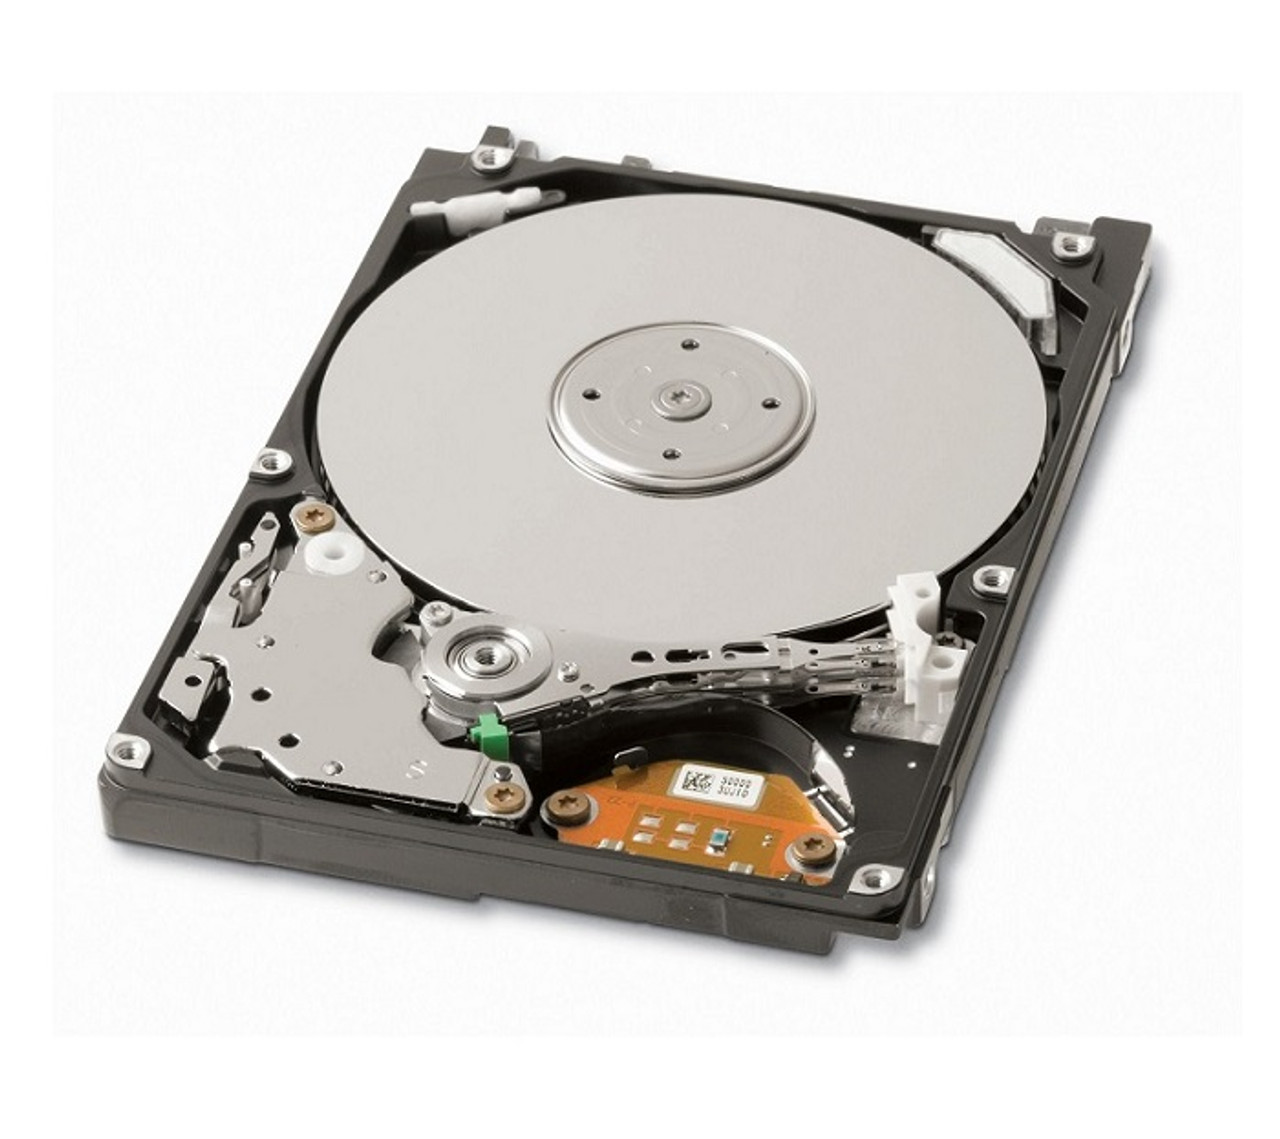 06T245 - Dell 60GB 4200RPM ATA/IDE 2.5-inch Hard Disk Drive